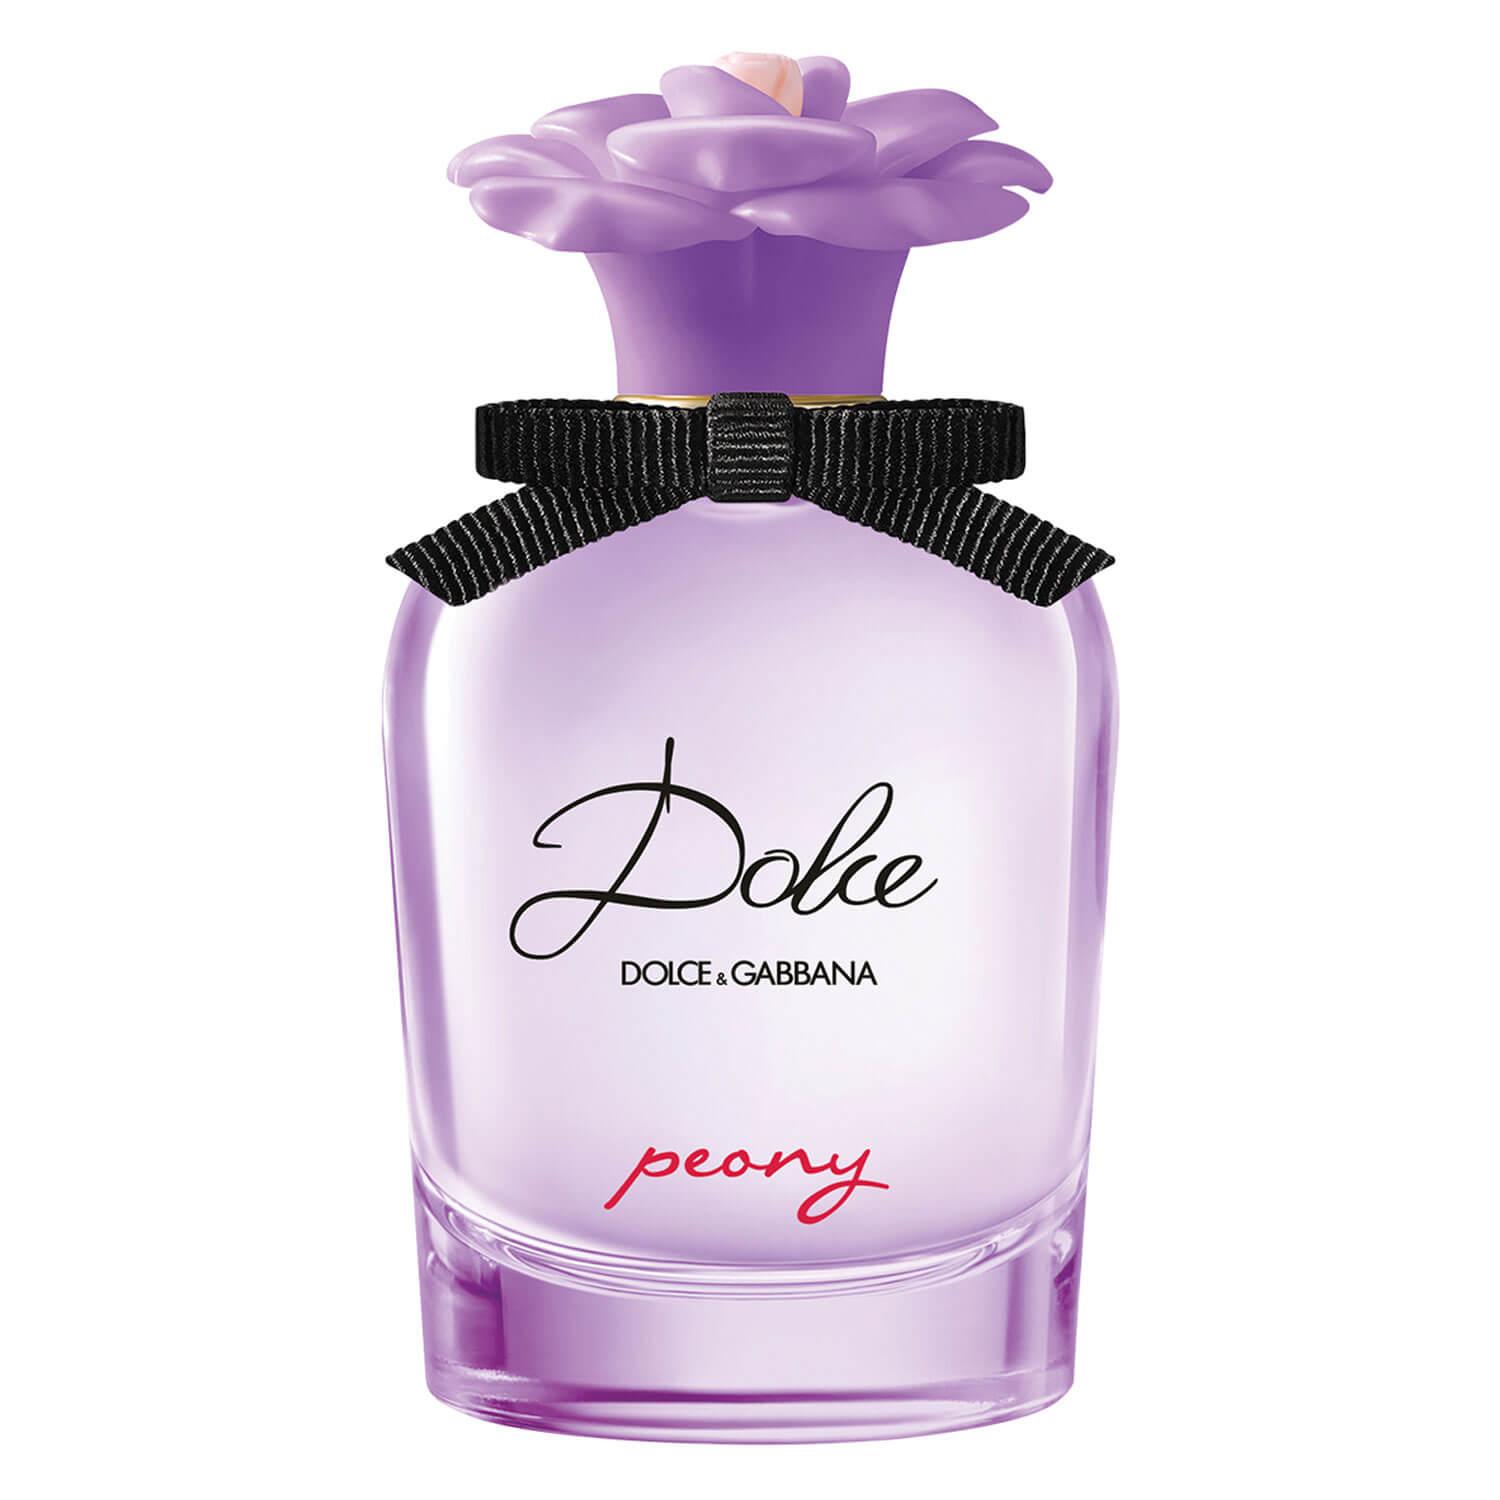 D&G Dolce - Peony Eau de Parfum